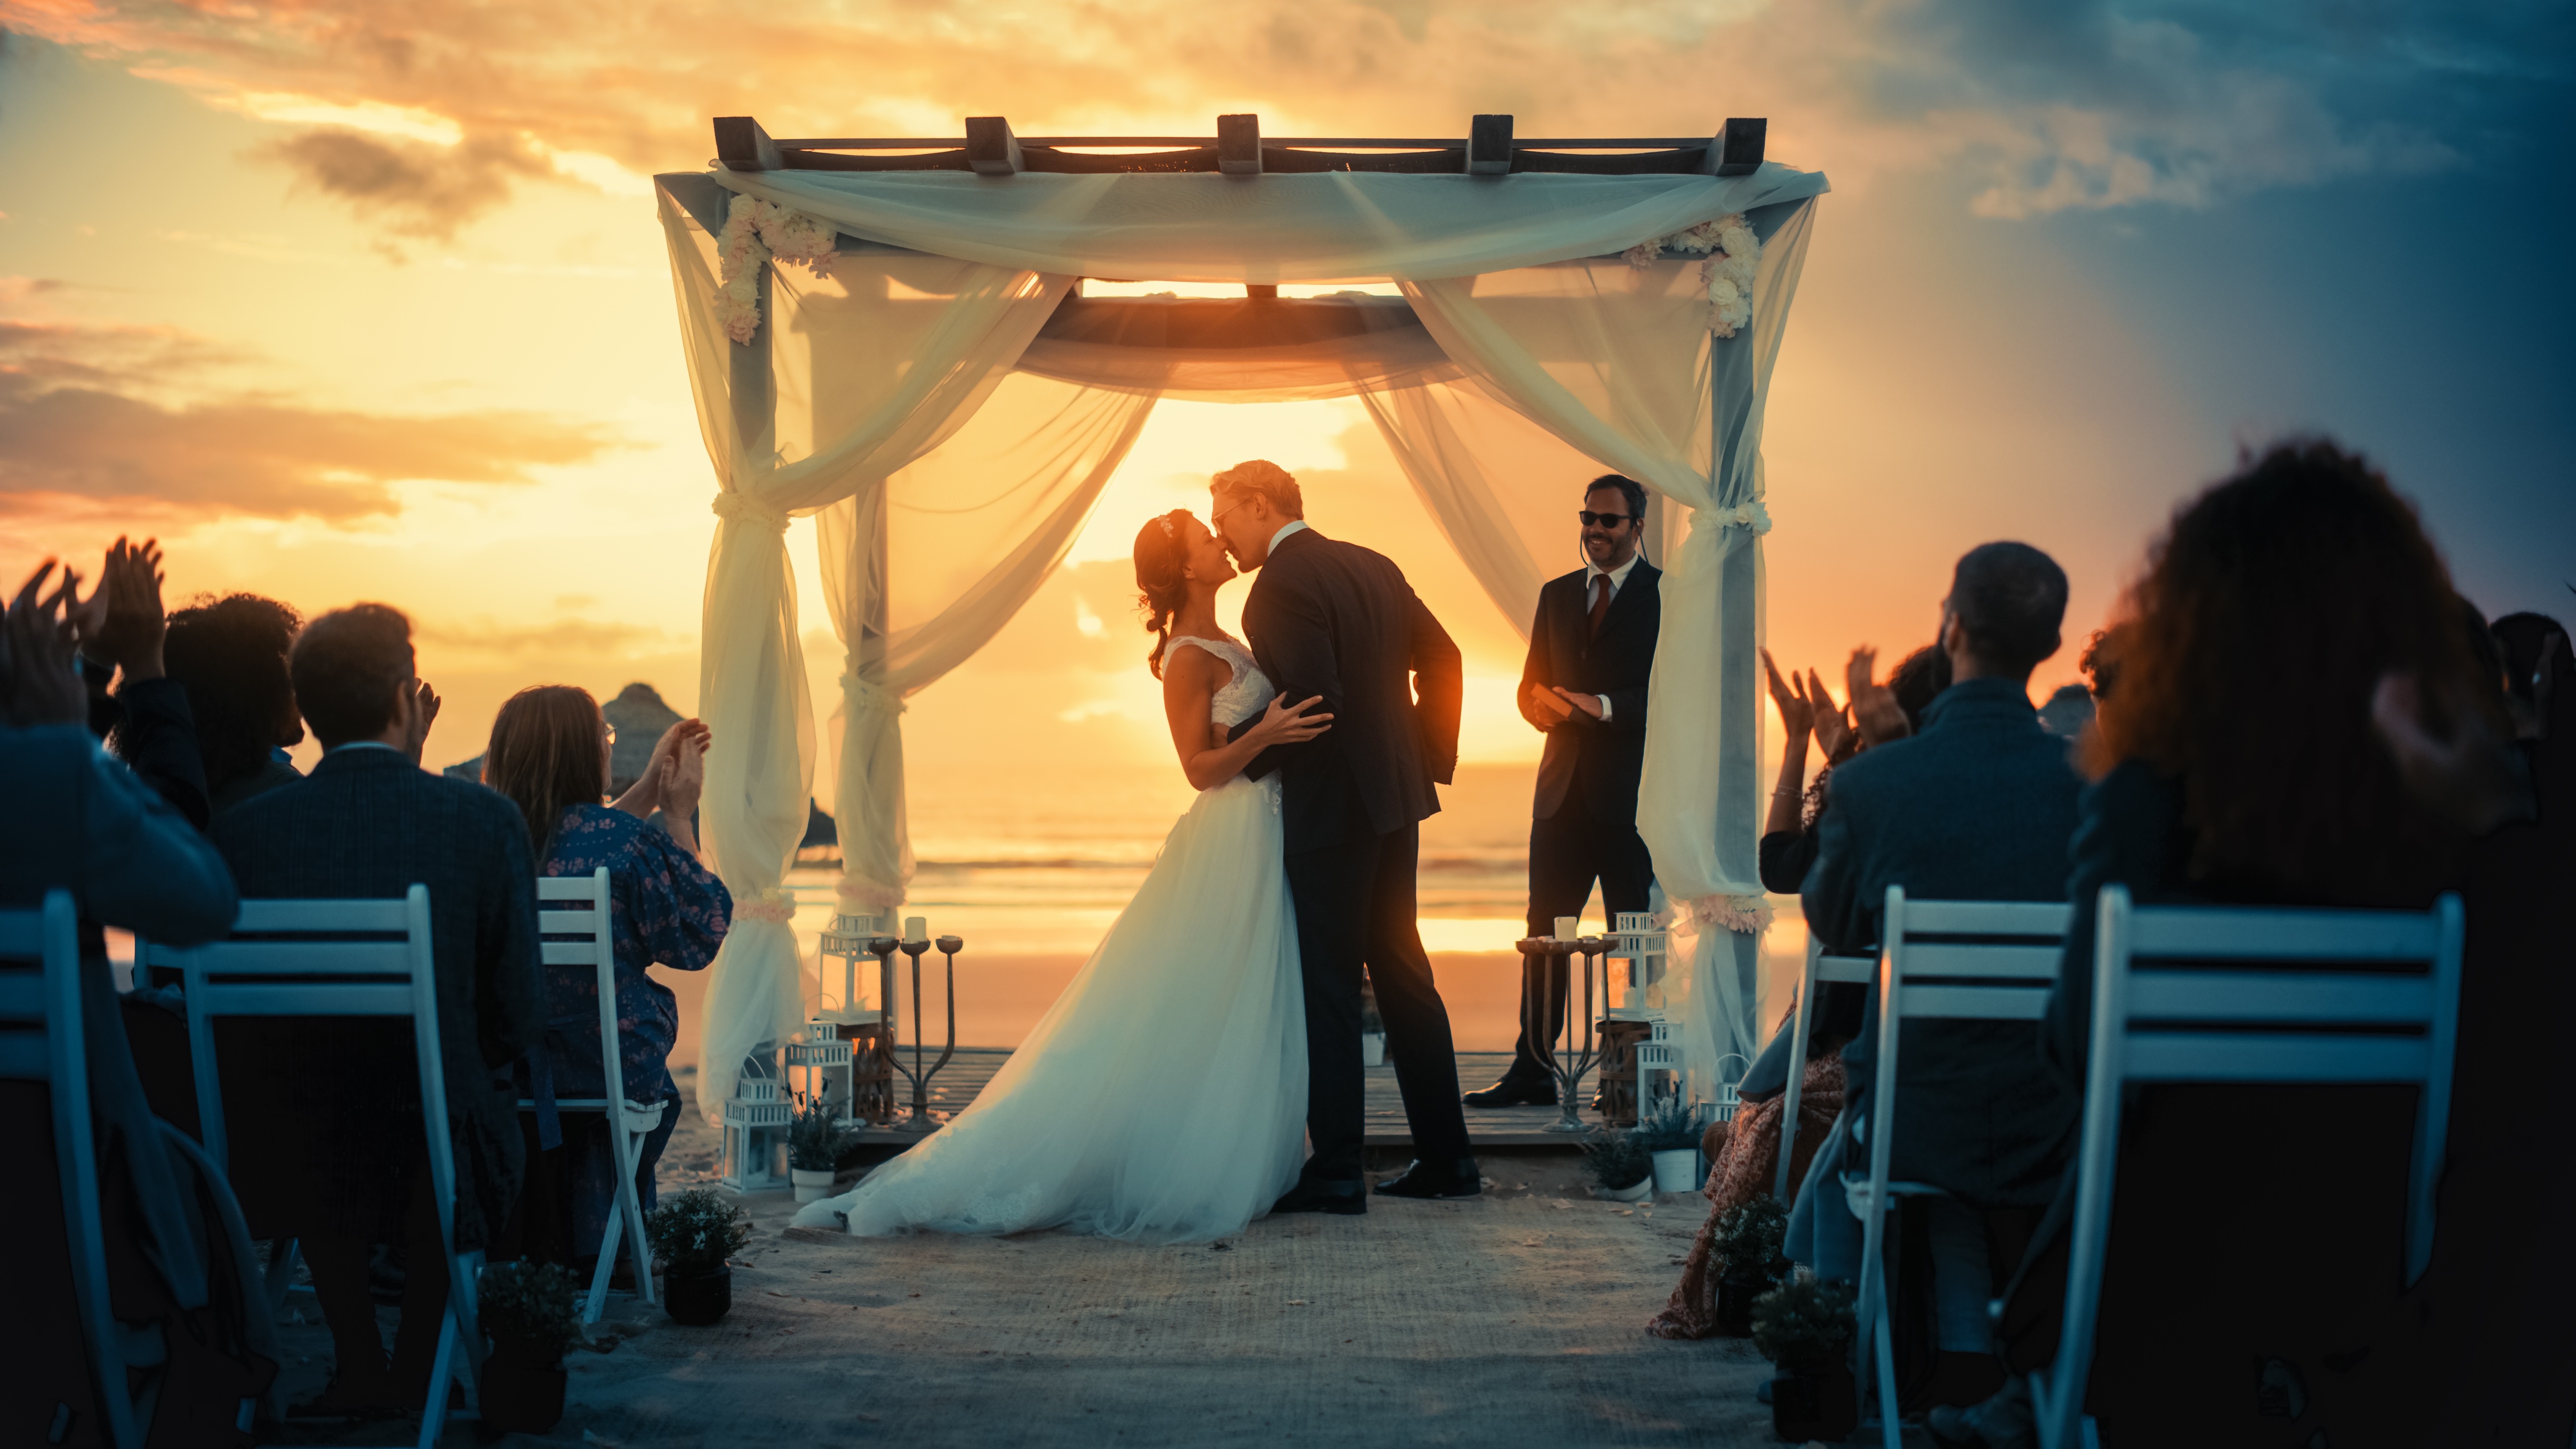 Novios comparten un beso en su boda | Foto: Shutterstock